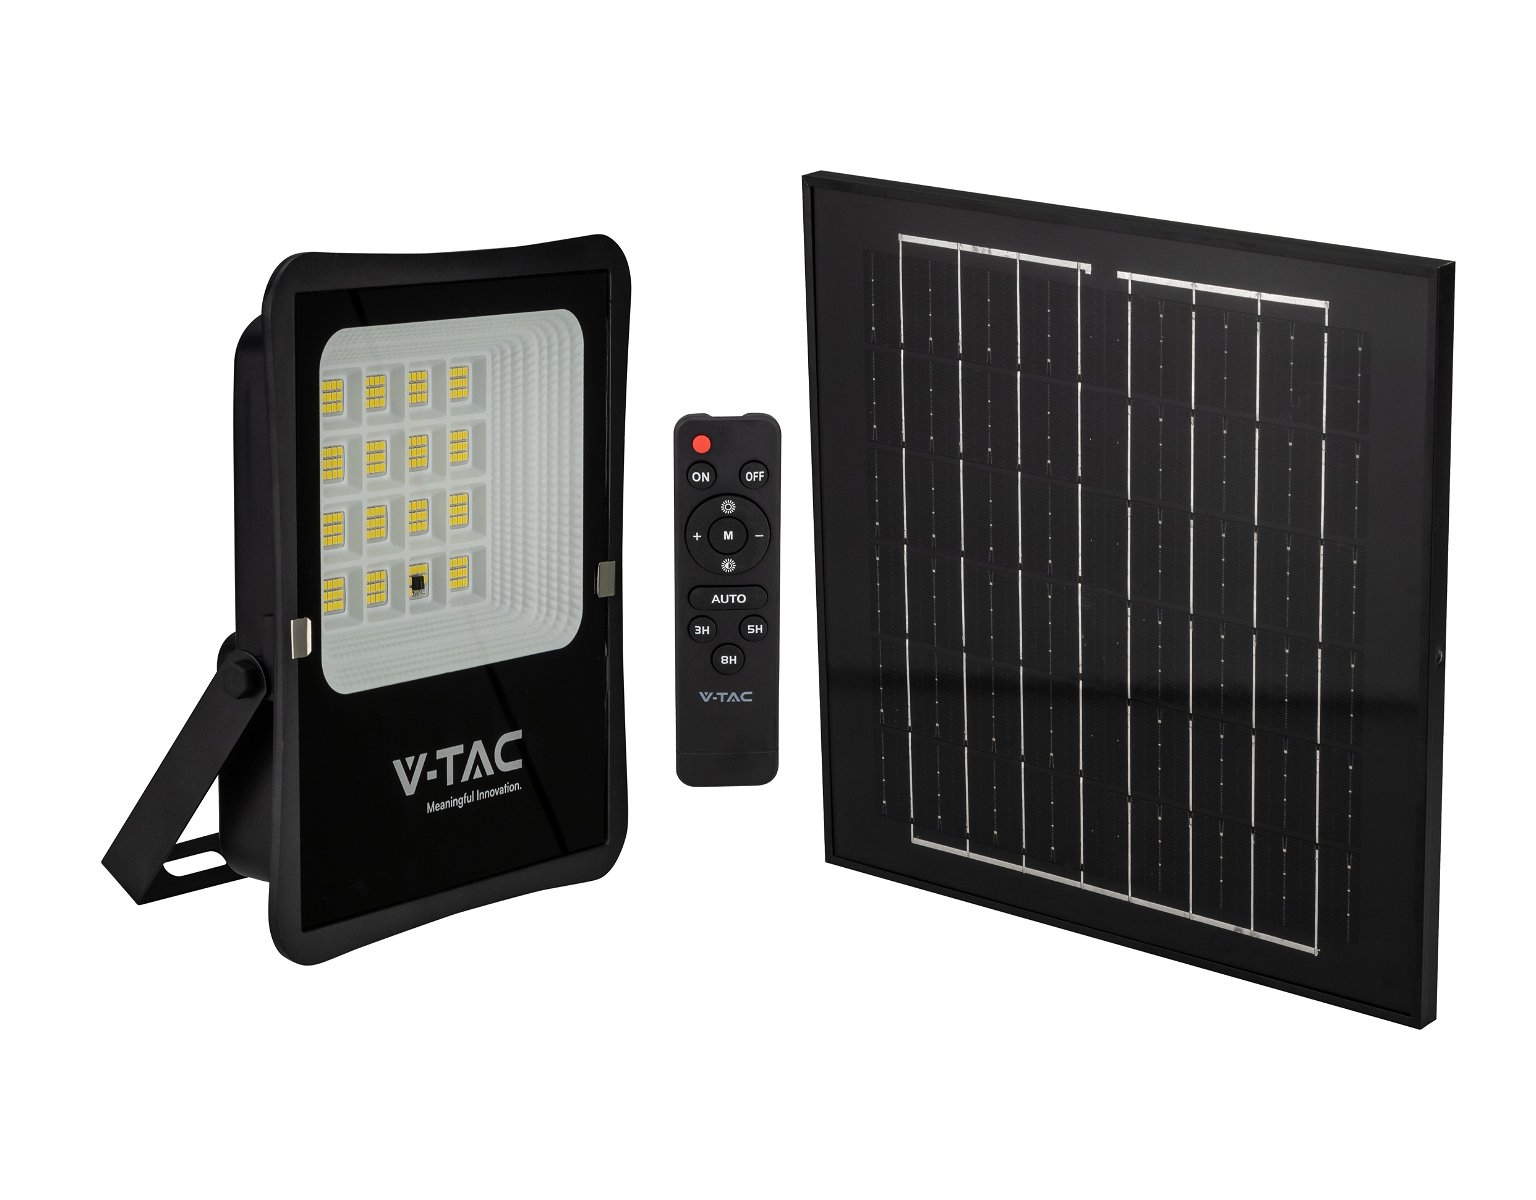 LED prožektorius V -TAC, įkraunamas saulės energija, IP65, 4000 K, 1600 lm, su pultu, juodos spalvos